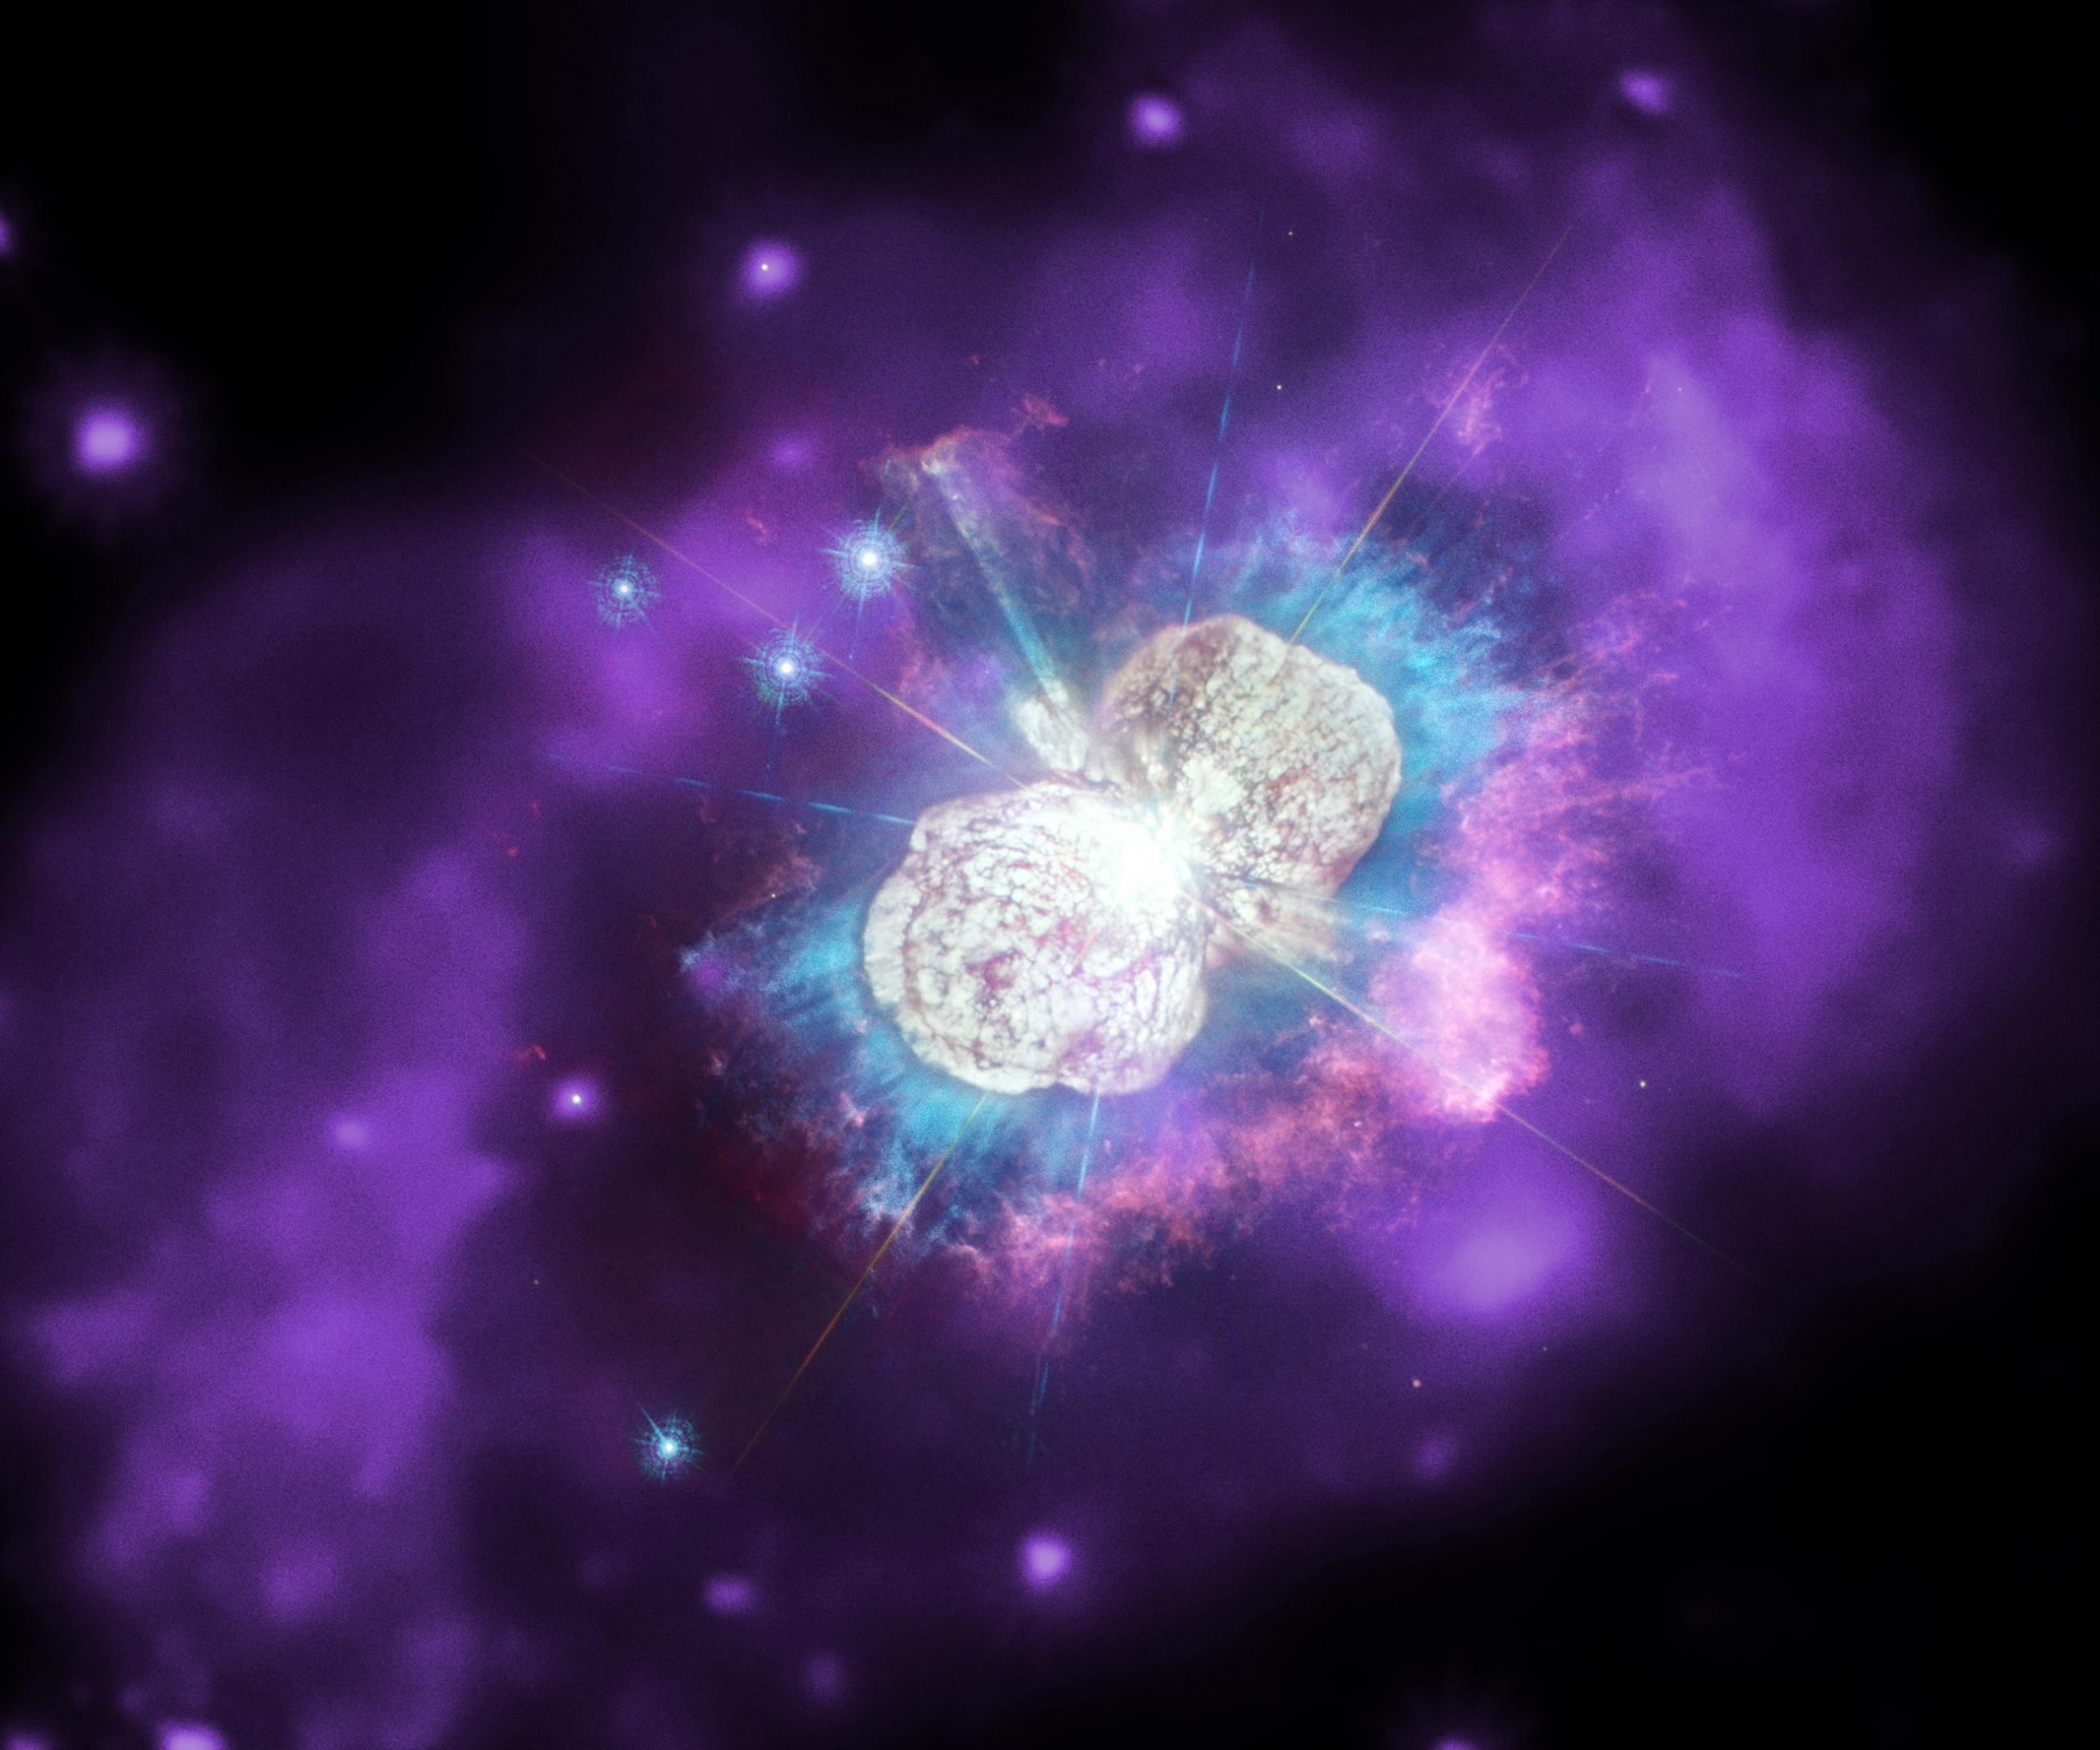 明亮的宇宙伽马射线暴可能揭示出奇怪的星际“结点”